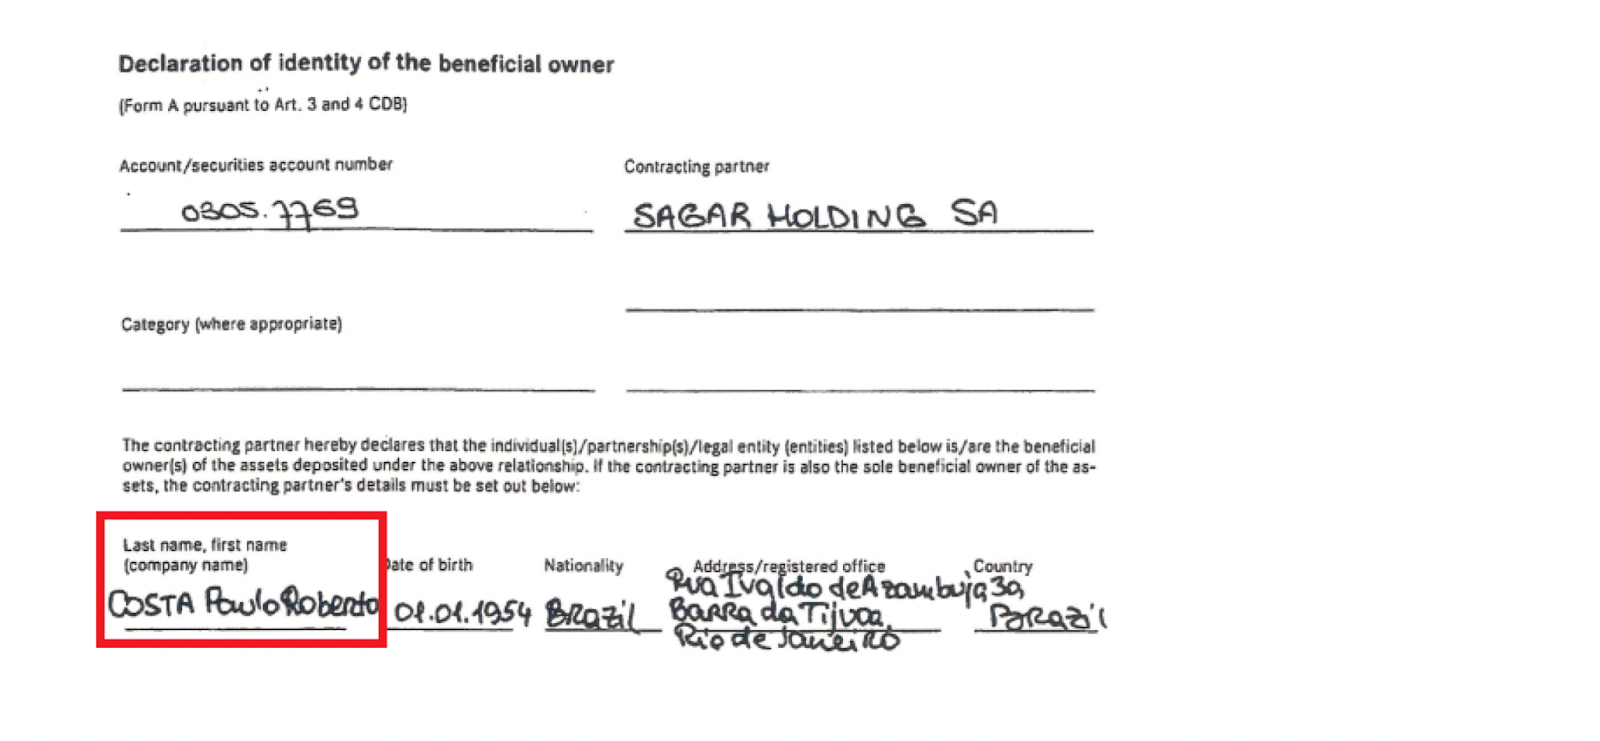 Documento donde consta que Paulo Roberto Costa es el beneficiario de Sagar Holding SA.